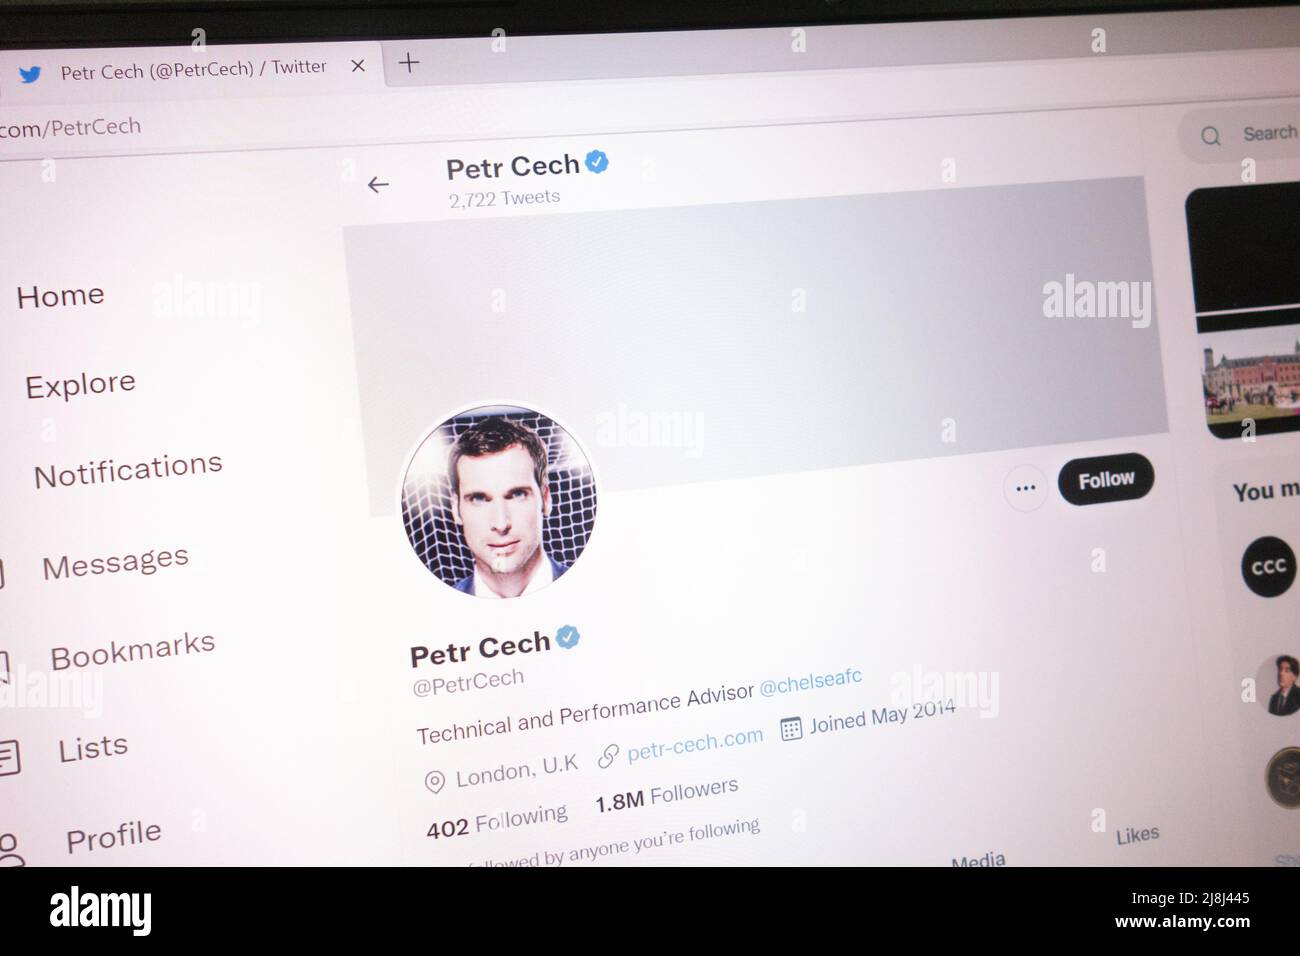 KONSKIE, POLONIA - 14 maggio 2022: Account Twitter ufficiale Petr Cech visualizzato sullo schermo del laptop Foto Stock